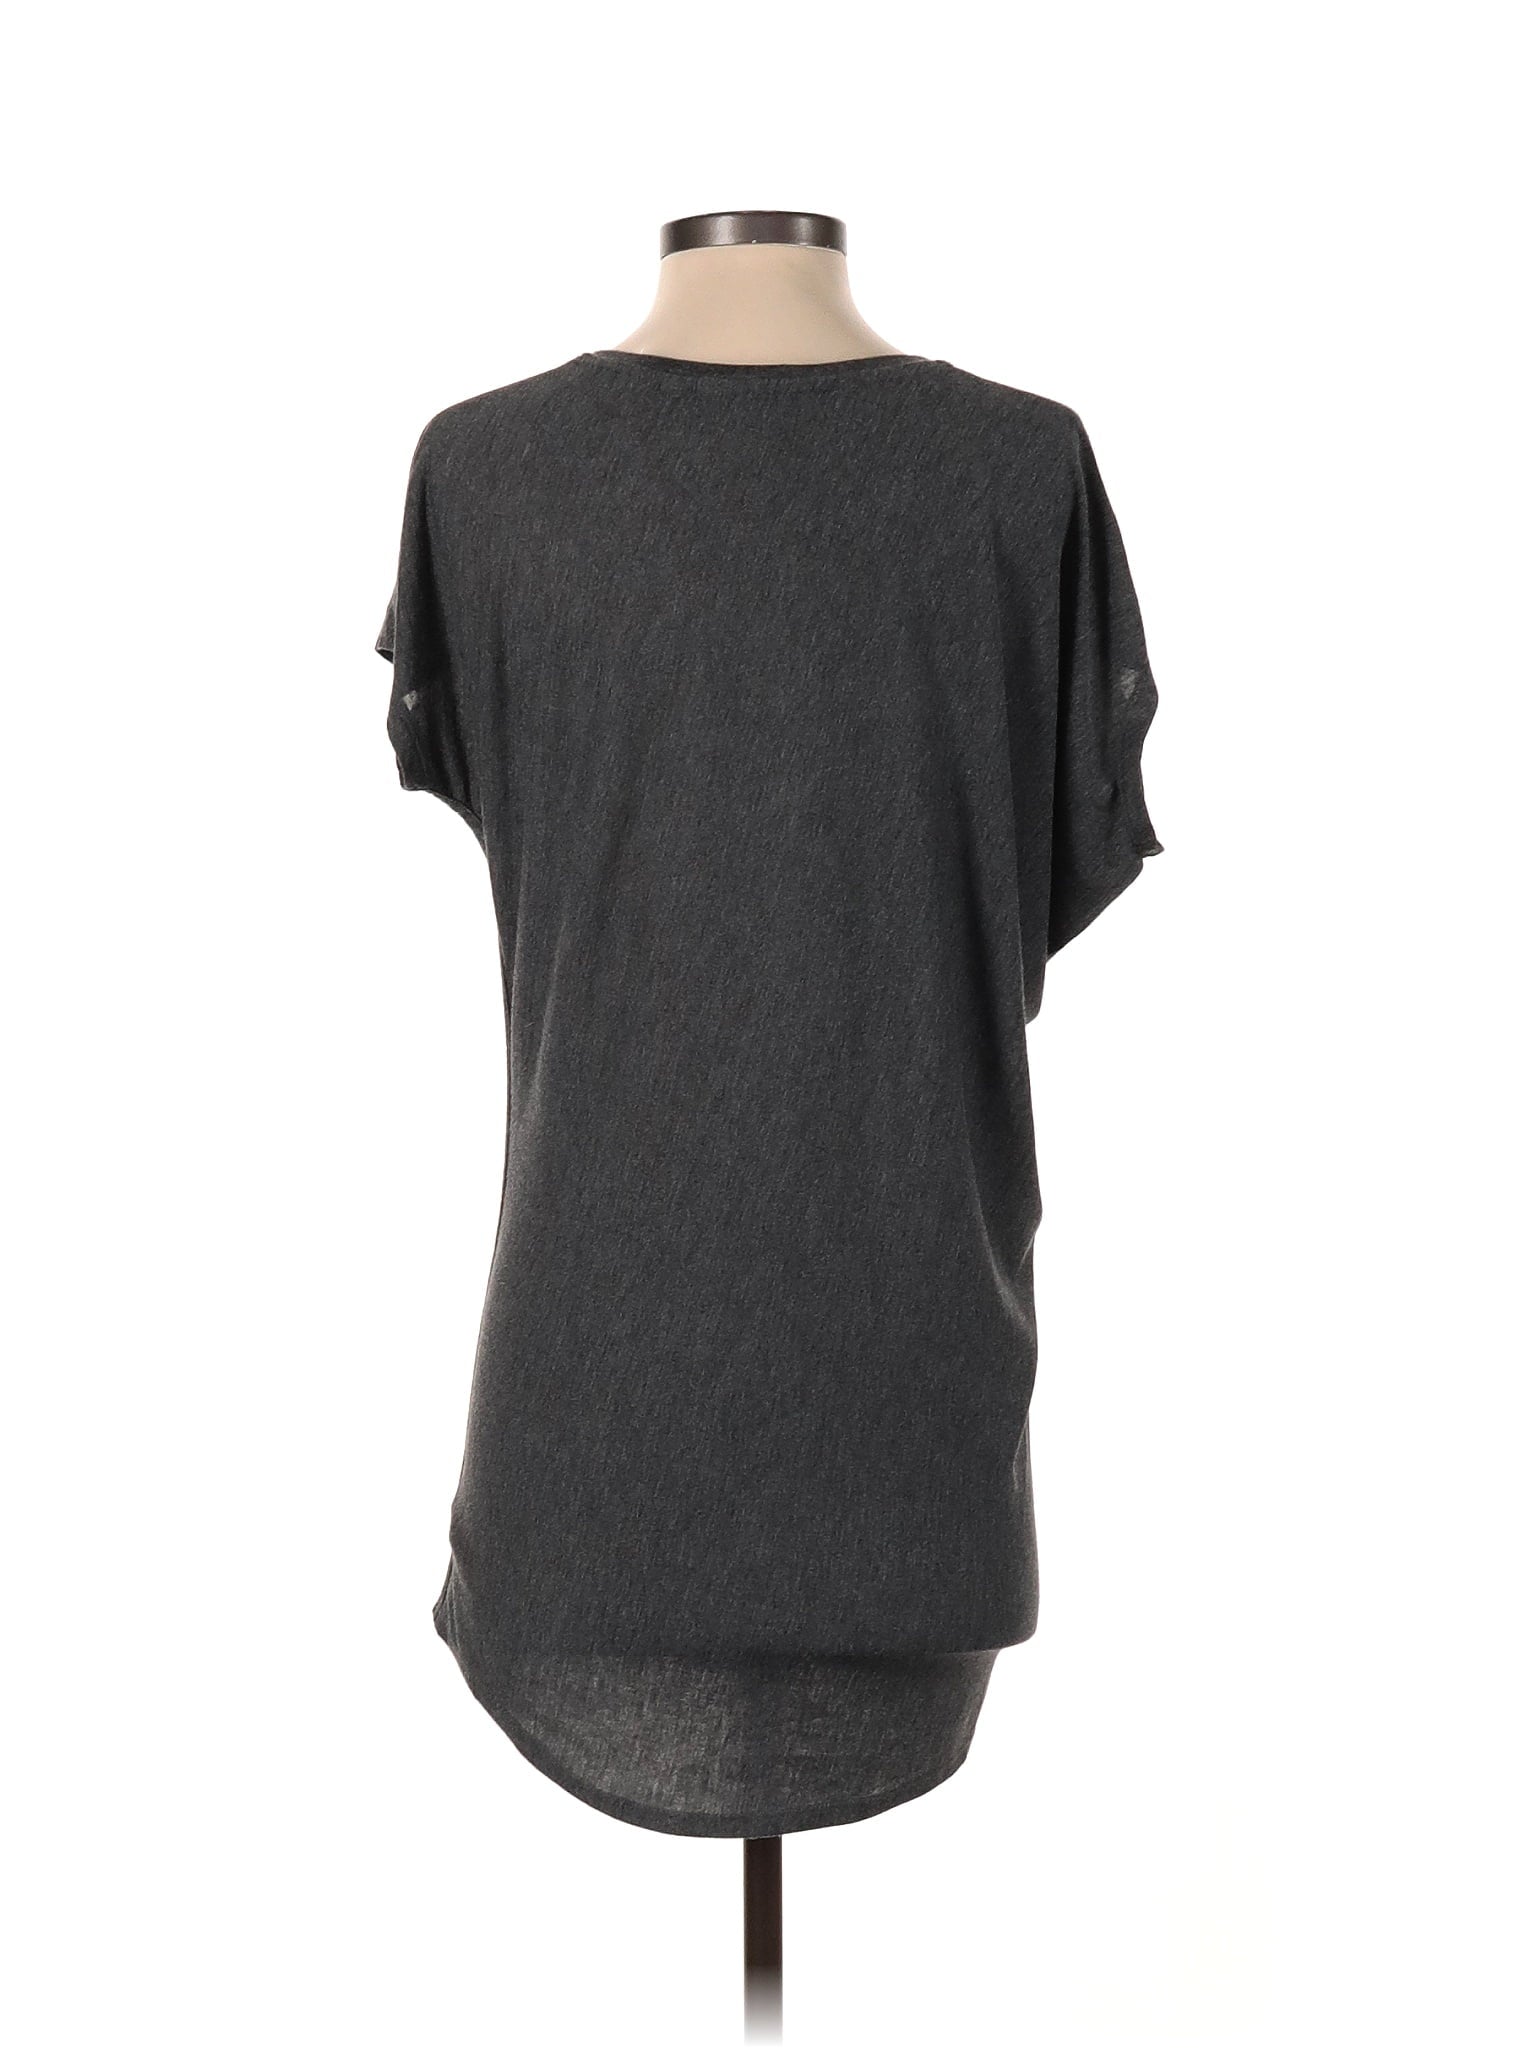 Short Sleeve T Shirt size - XXS